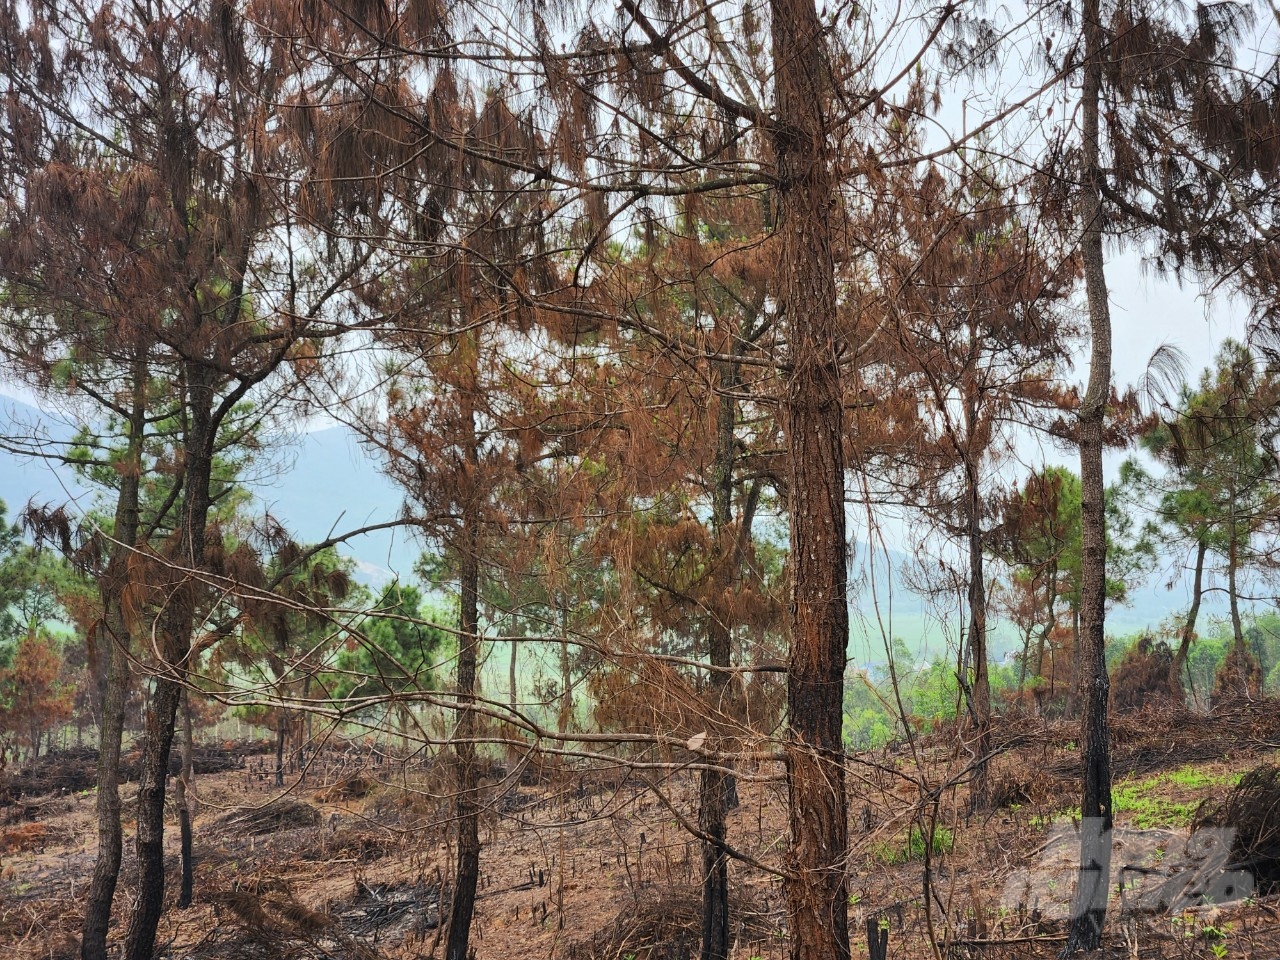 Hàng trăm cây thông khác nằm trong tình trạng bị cháy xém phần gốc, lá thông chuyển thành màu vàng và nâu đỏ khó có khả năng phục hồi. Ảnh: Quốc Toản.